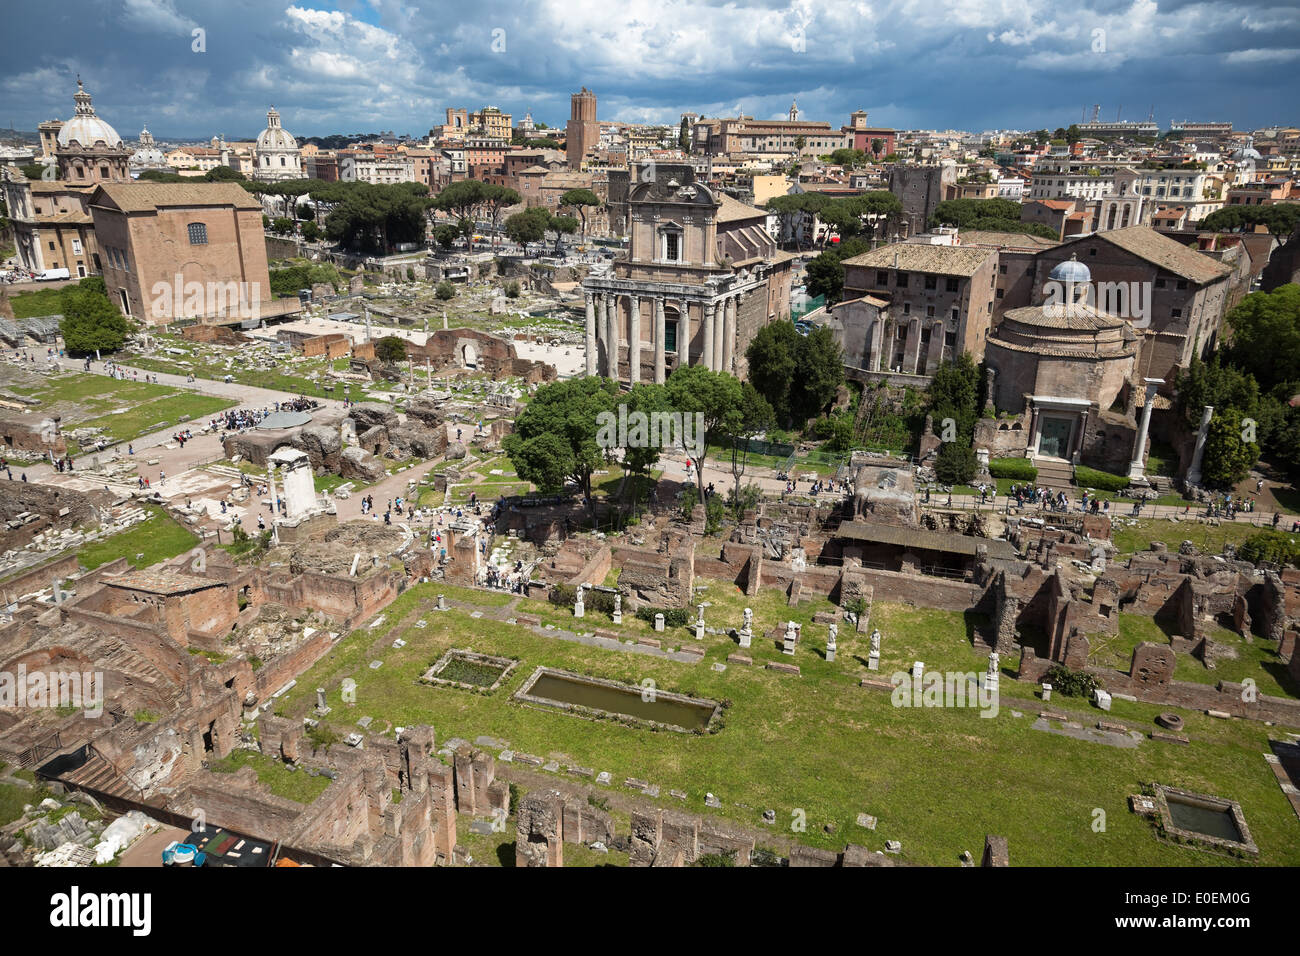 Forum Romanum, Rom, Italien - Forum Romanum, Rome, Italy Stock Photo